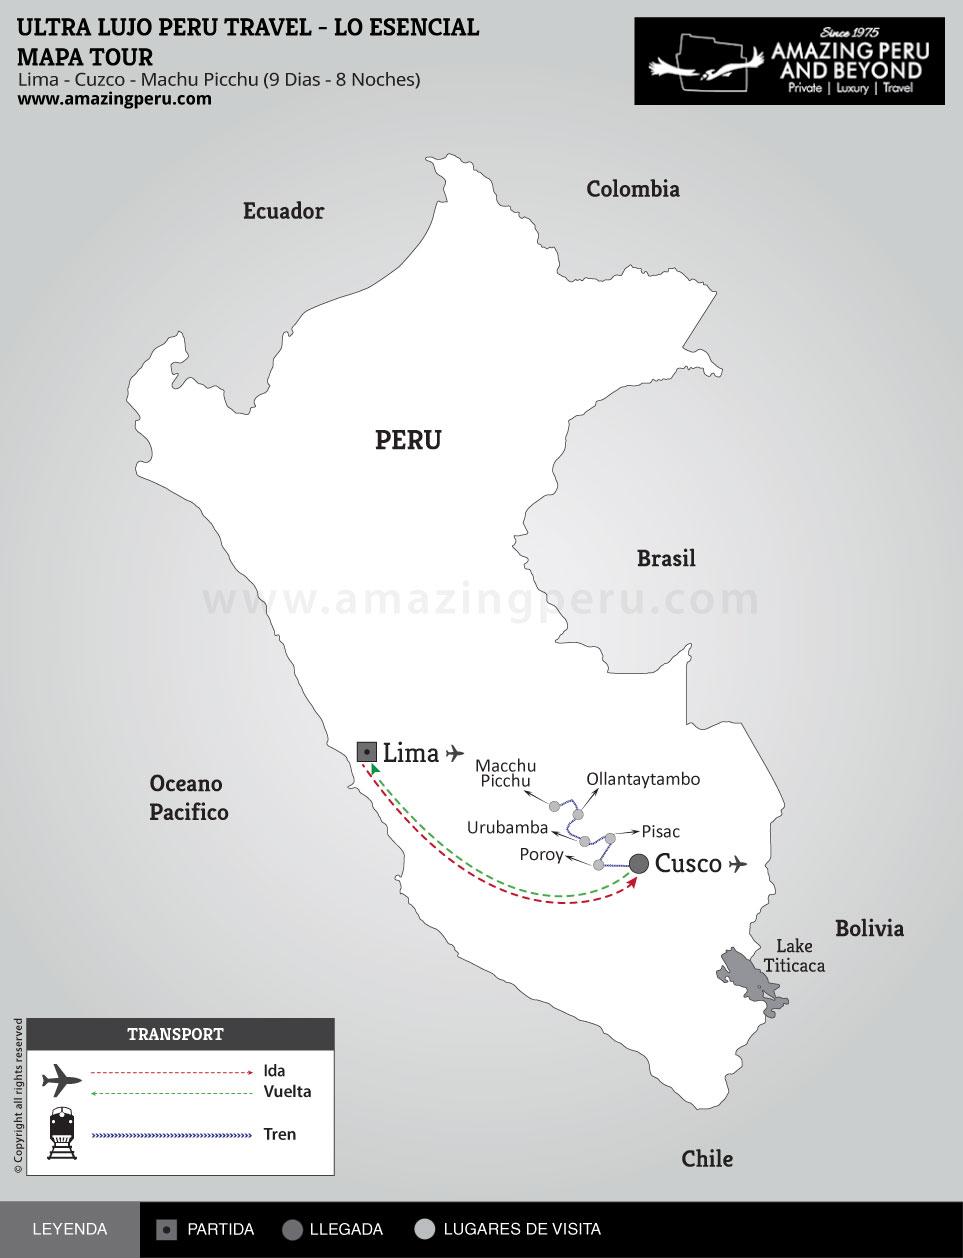 Ultra Lujo Perú Travel - Lo Esencial